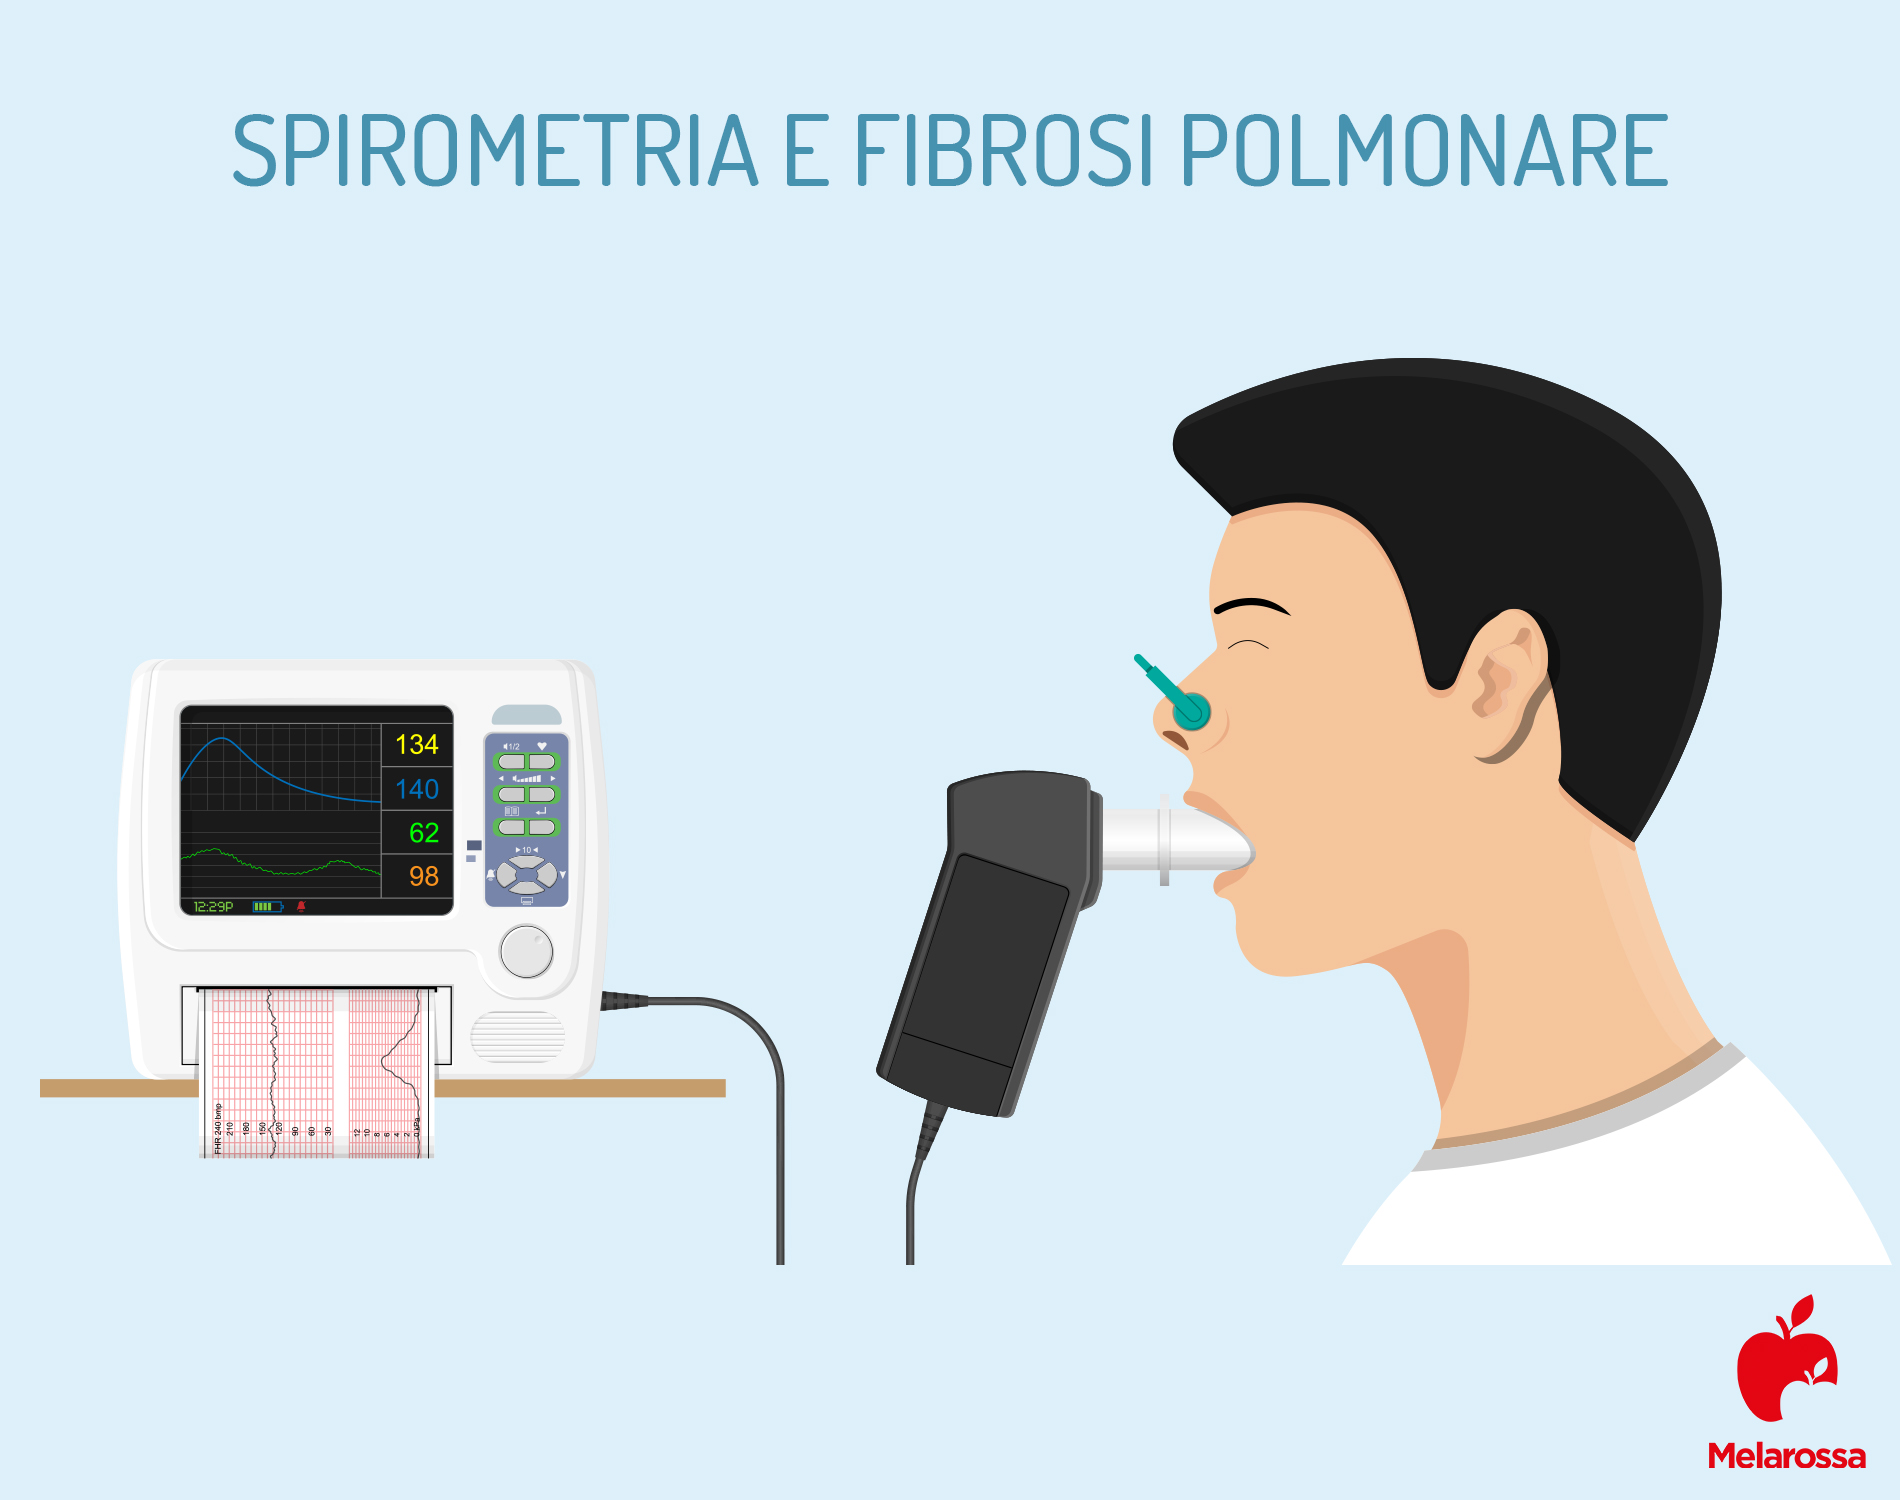 fibrosi polmonare: spirometria